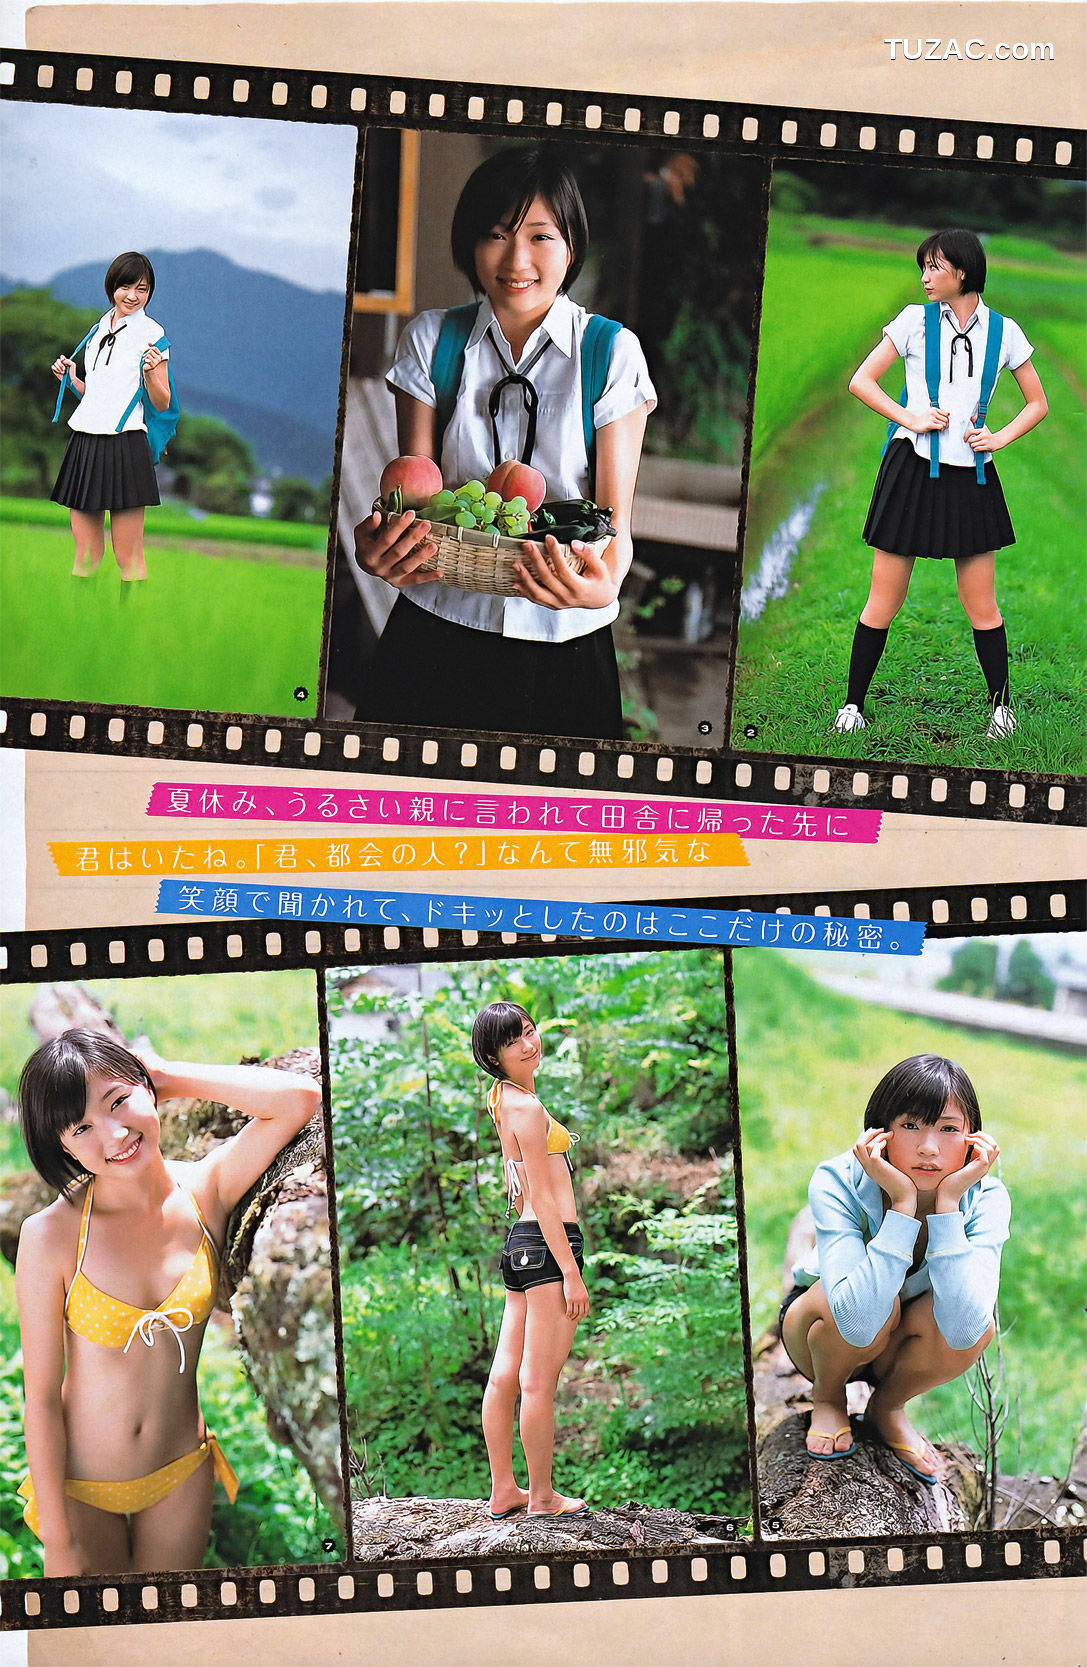 Young Gangan杂志写真_ 柏木由紀 菅野結以 相楽樹 2011年No.19 写真杂志[17P]